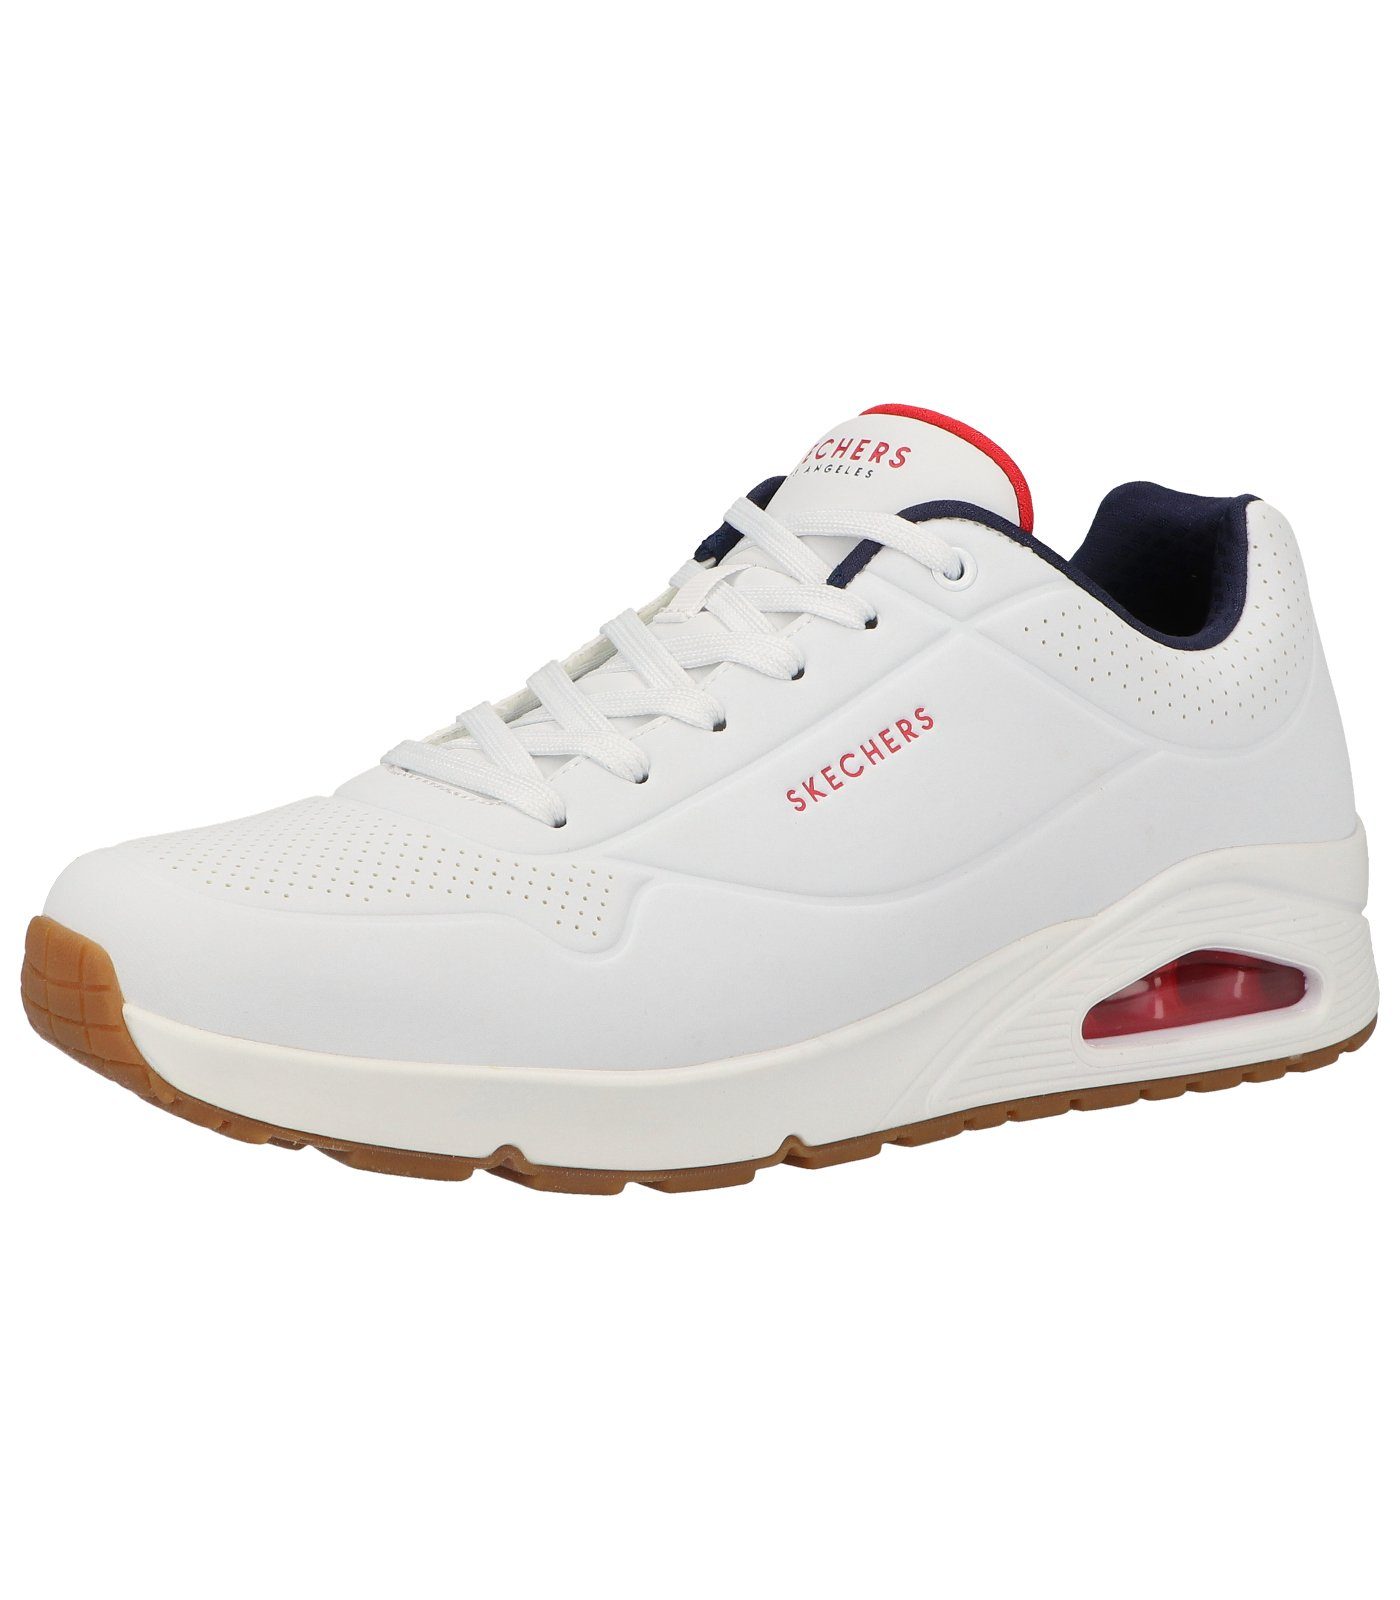 Skechers Sneaker Lederimitat Sneaker white/navy/red